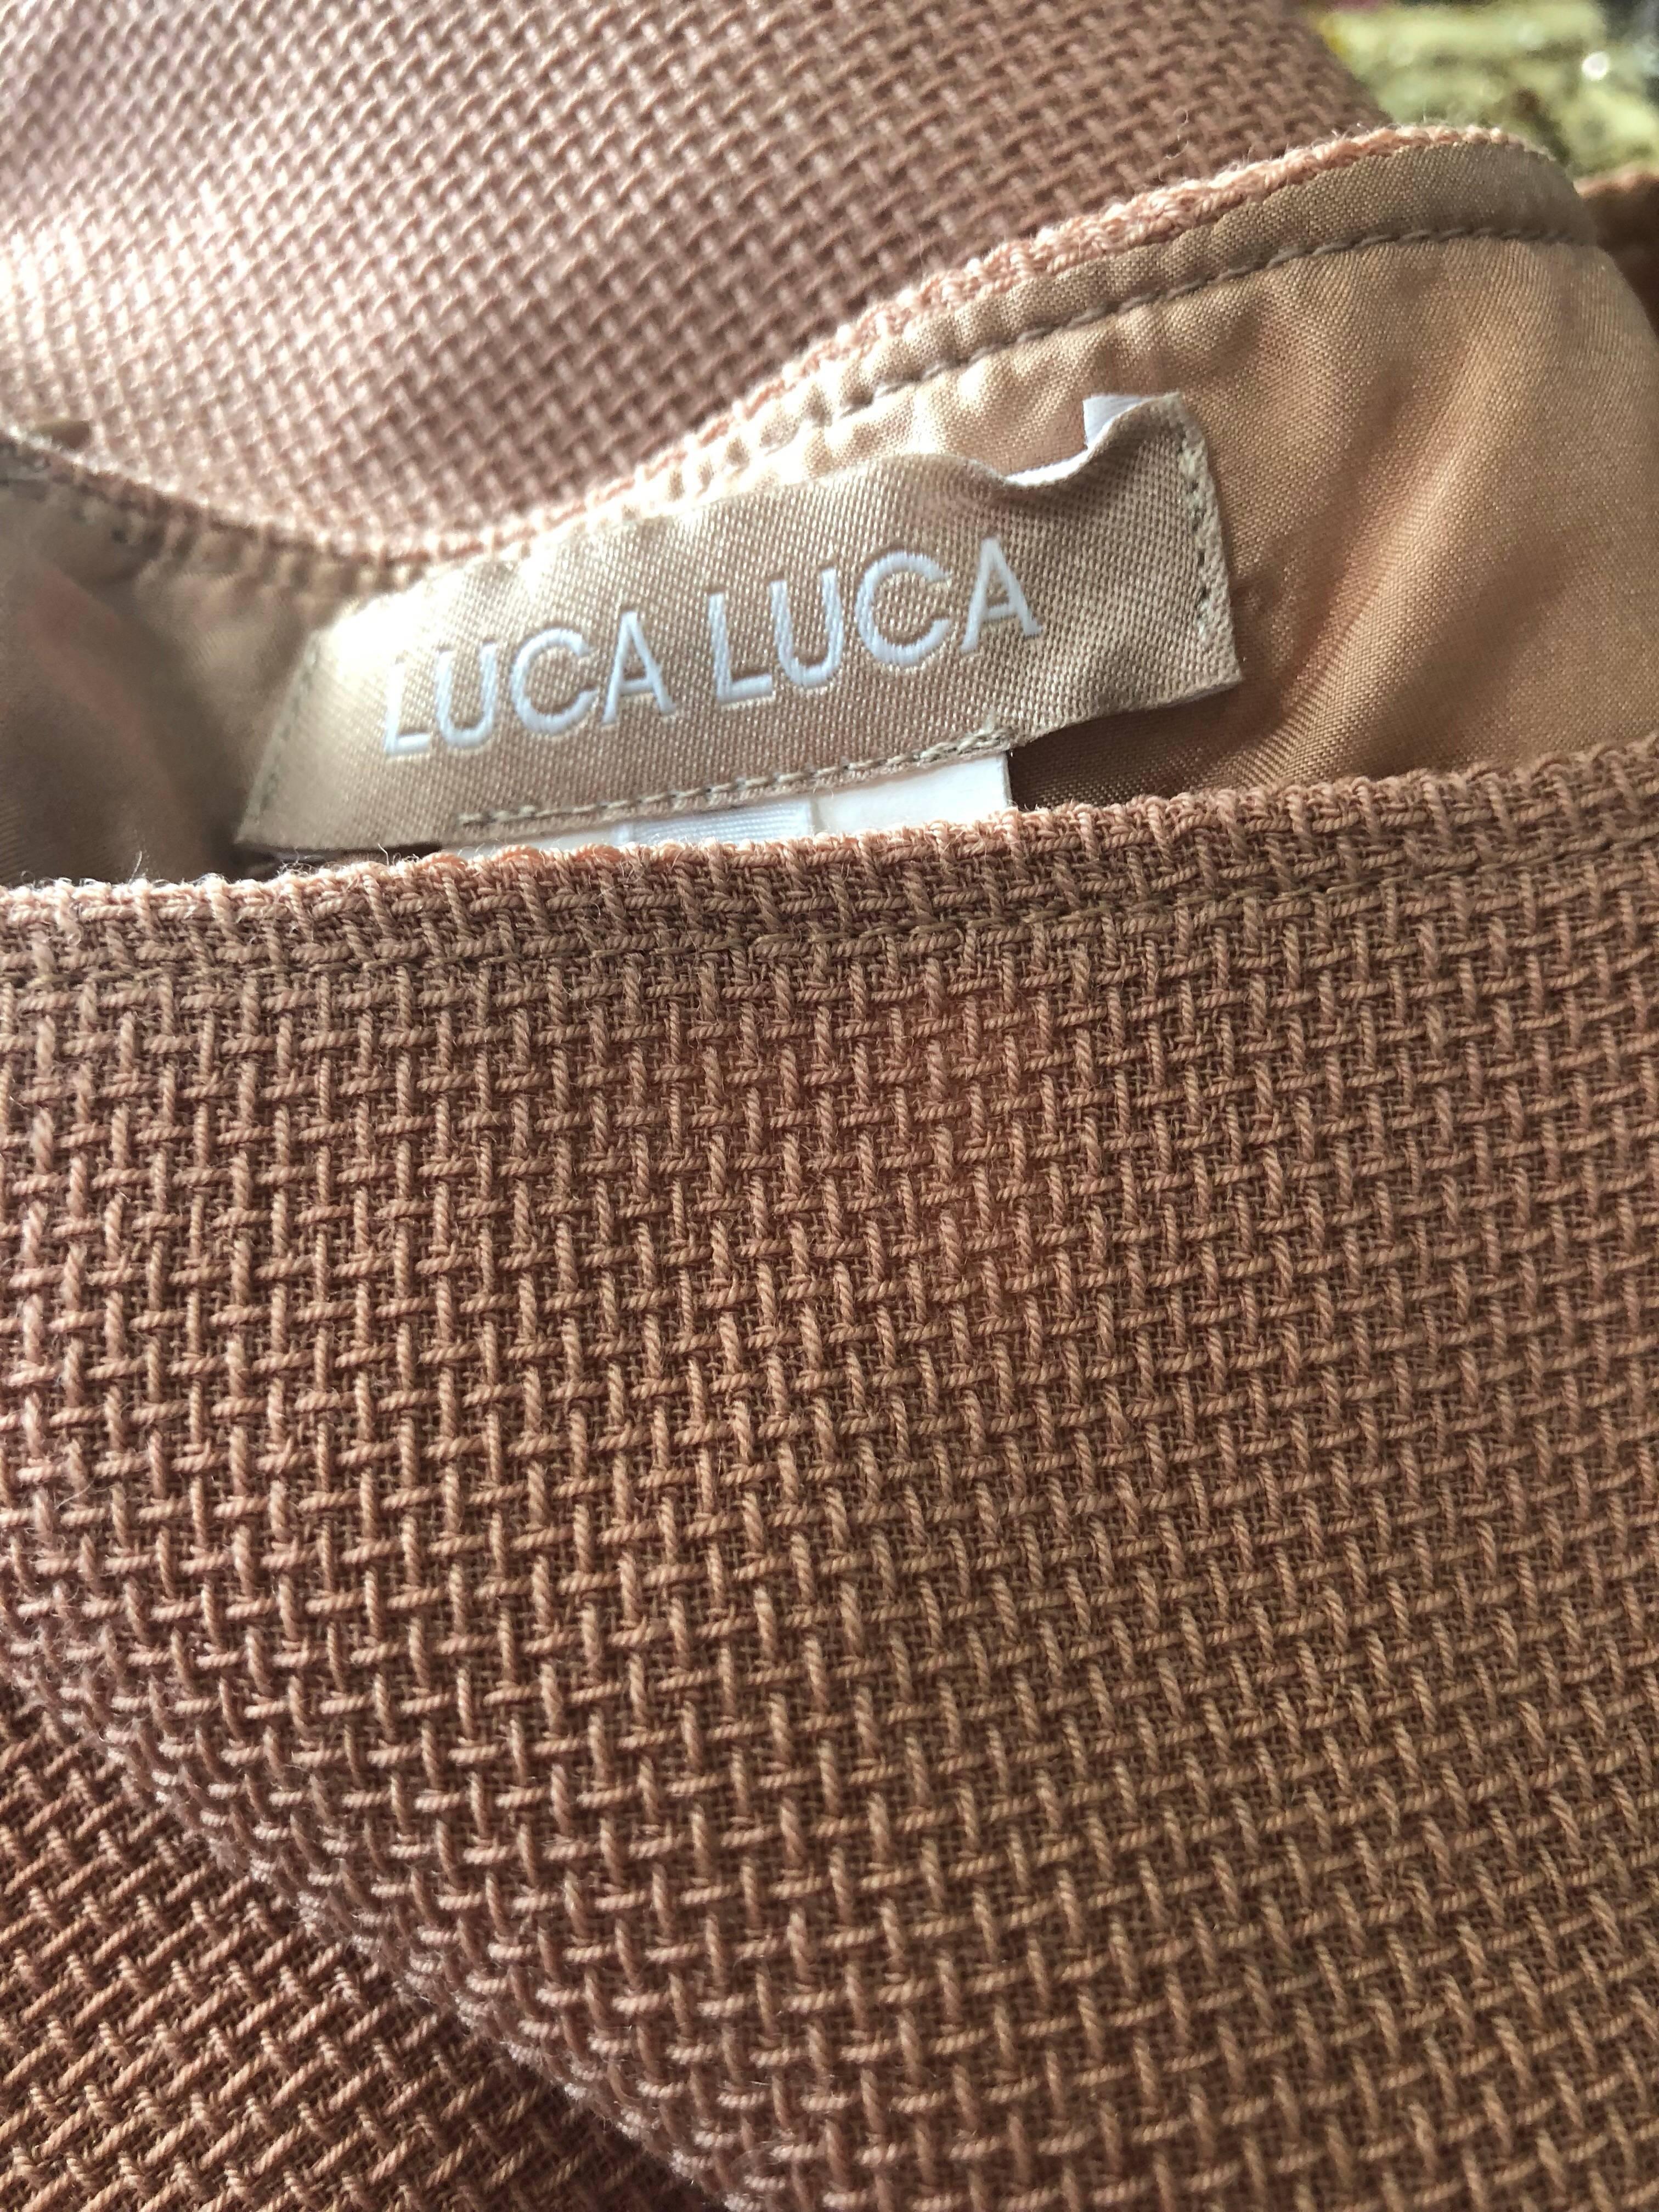 Luca Luca 1990s Terra Cotta Tan Sz 8 / 10 Virgin Wool Italian Vintage 90s Dress For Sale 5